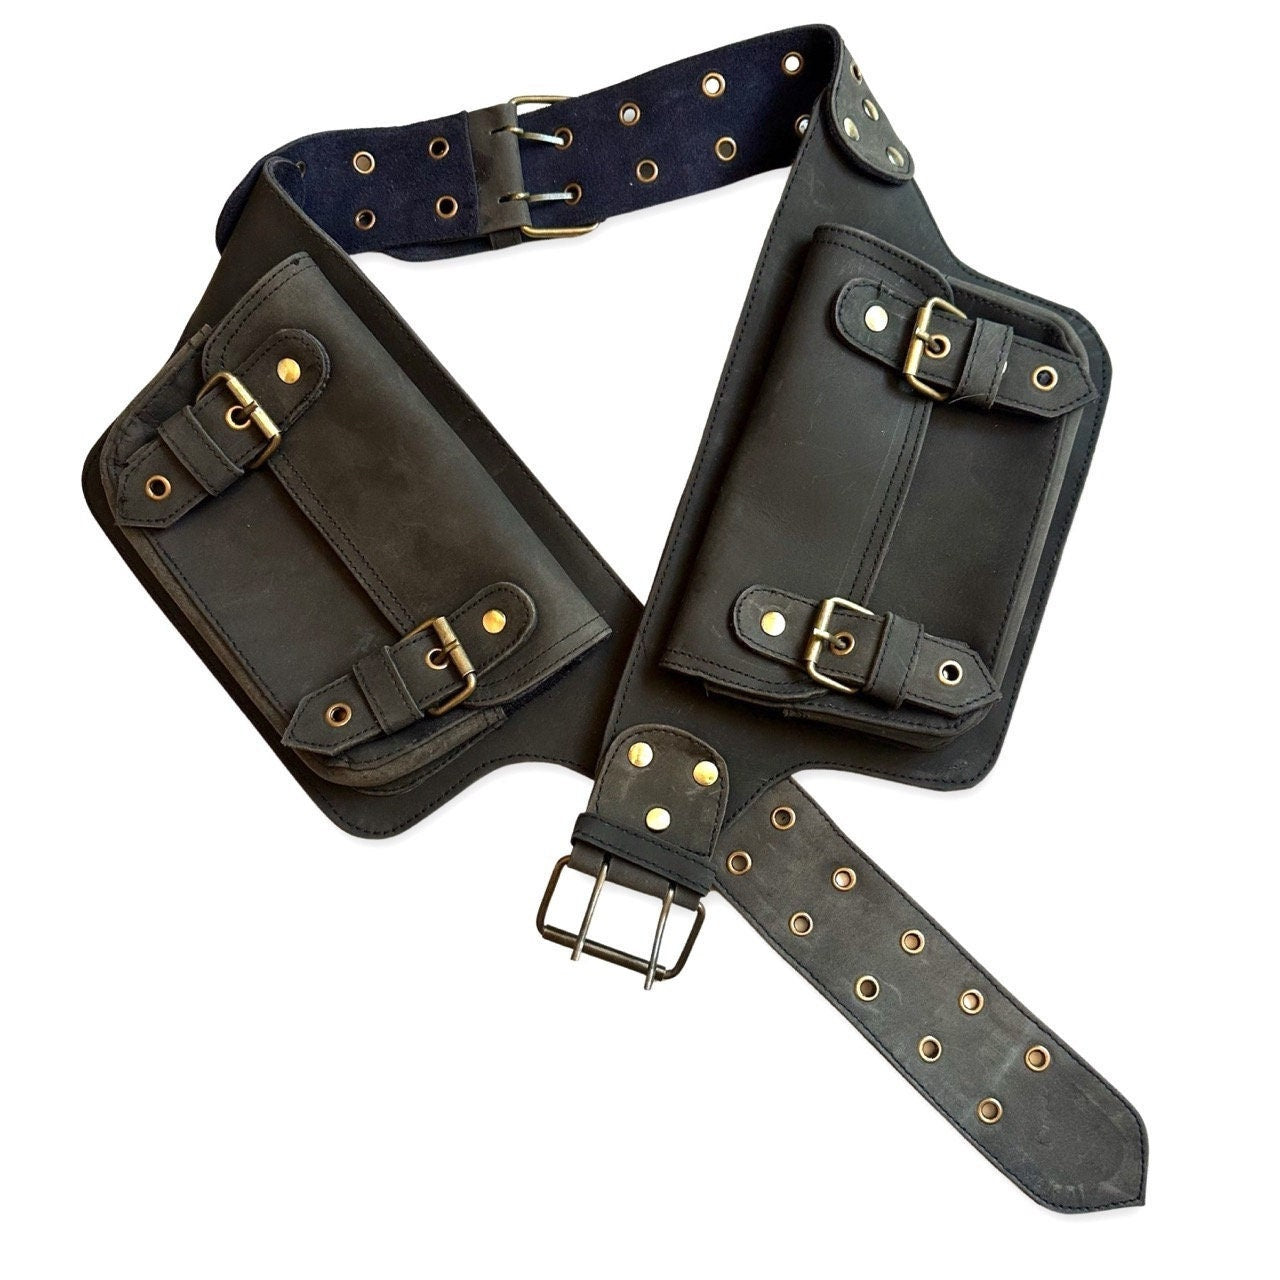 Black Genuine Leather Utility Belt, 4 pocket, Pocket Belt Leather, fanny pack, travel belt, festival, party purse, vendor belt, money belt